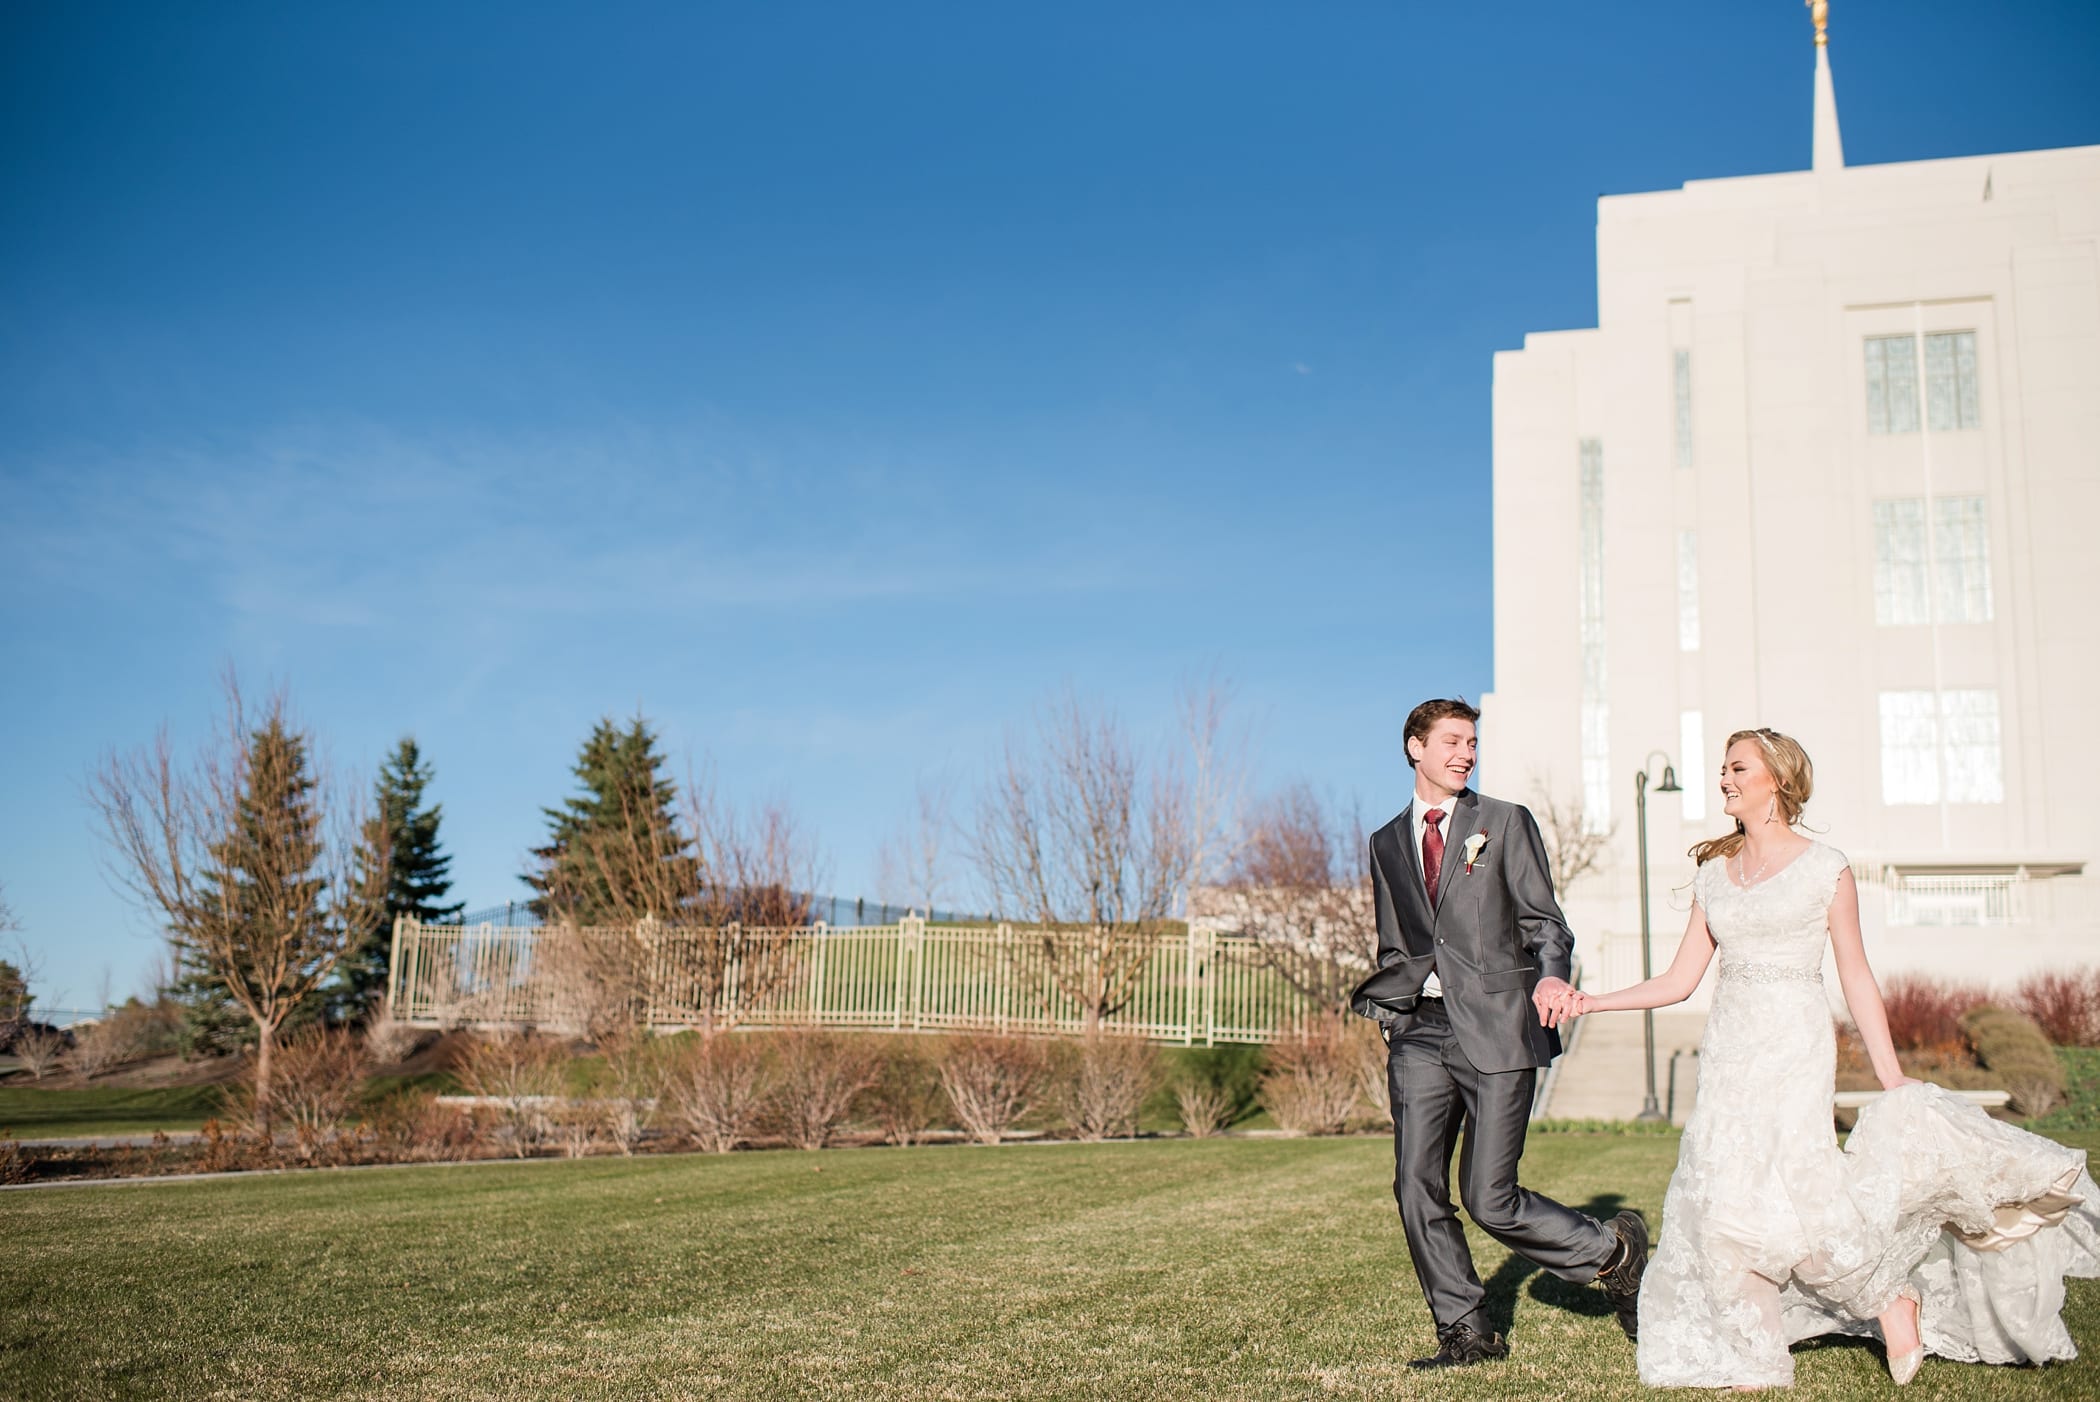 Rexburg LDS temple bridals by Michelle & Logan_0028